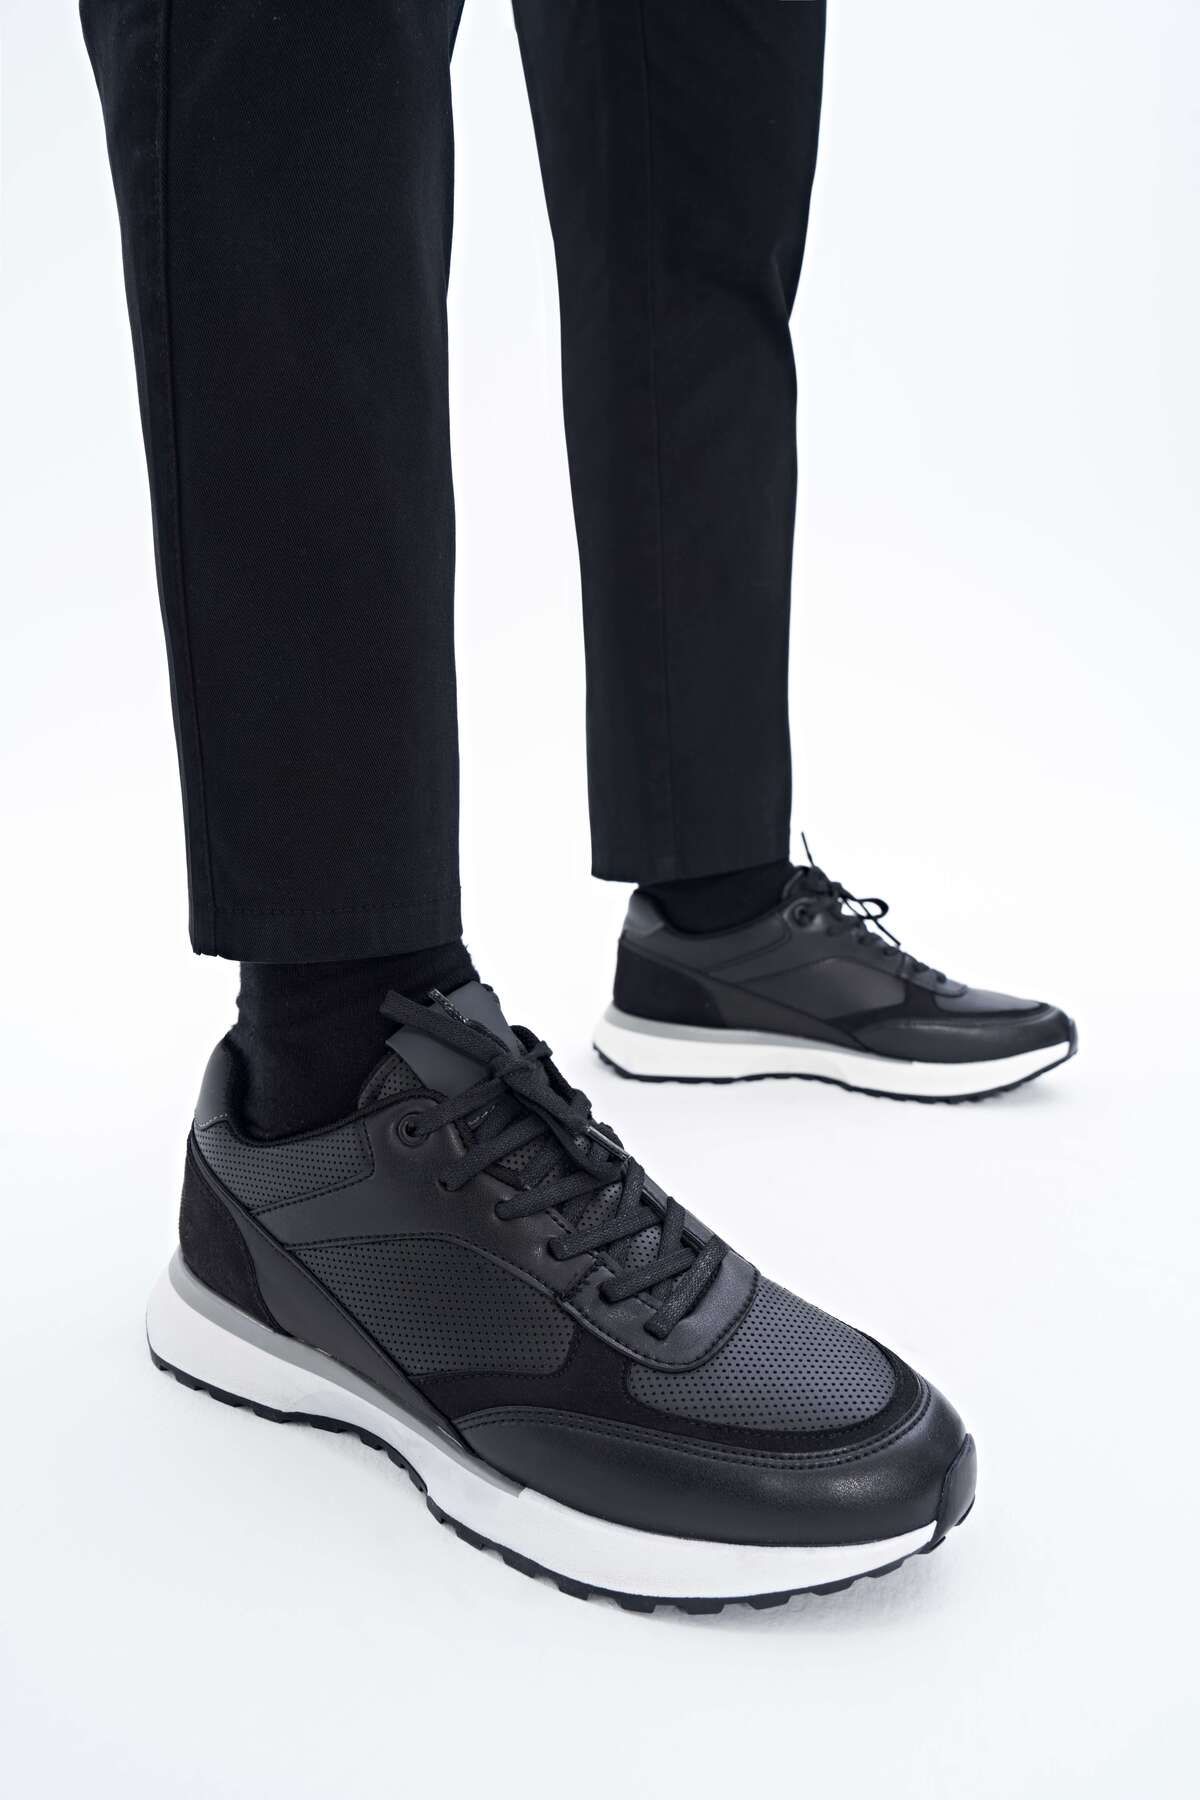 Yaya by Hotiç Siyah Yaya Erkek Spor Ayakkabı